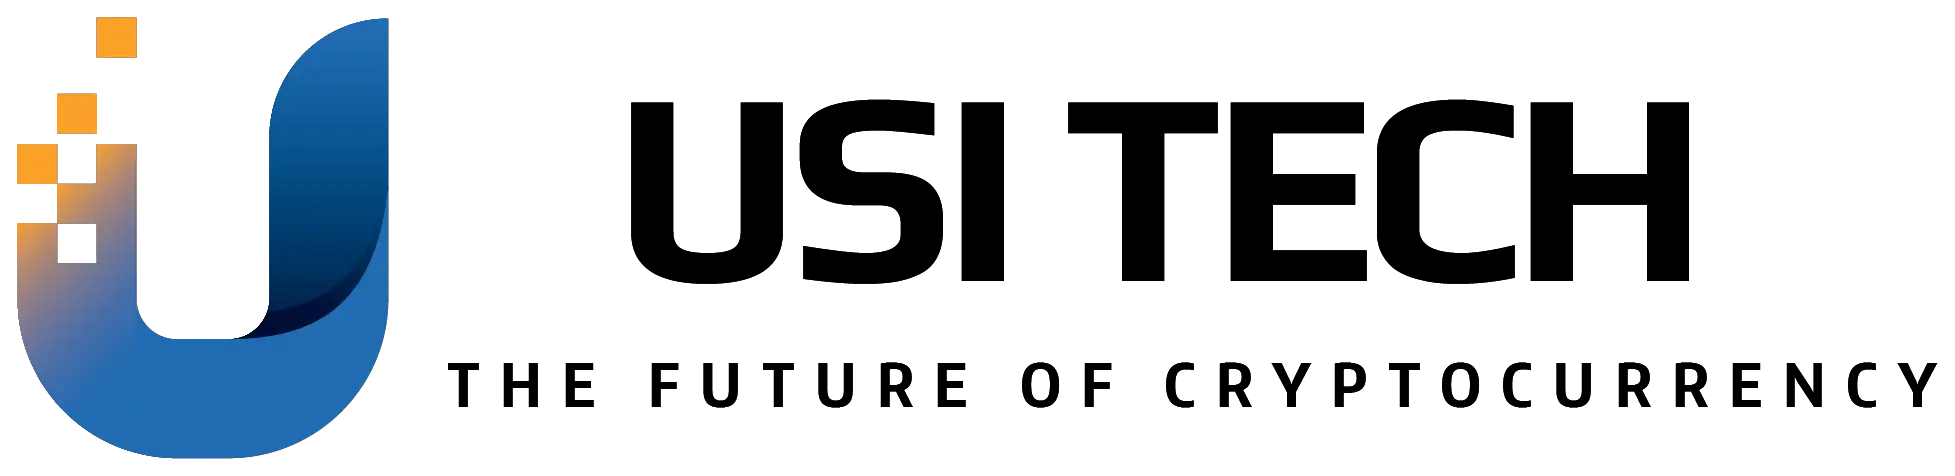 Logotipo de tecnología USI